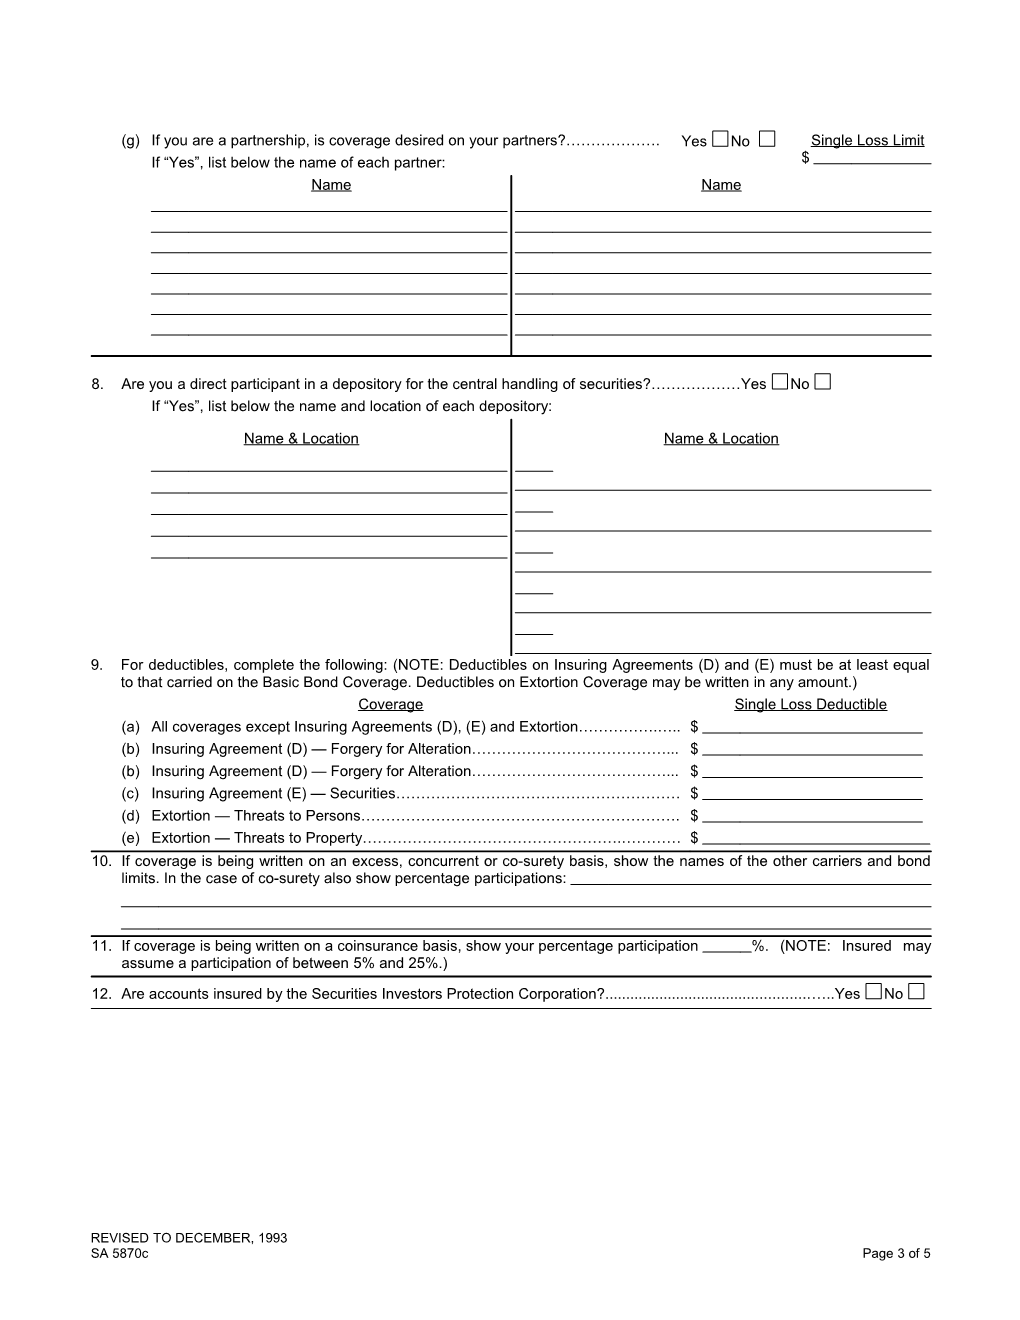 Application for a Financial Institution Bond, Standard Form No. 14 for Broker/Dealers